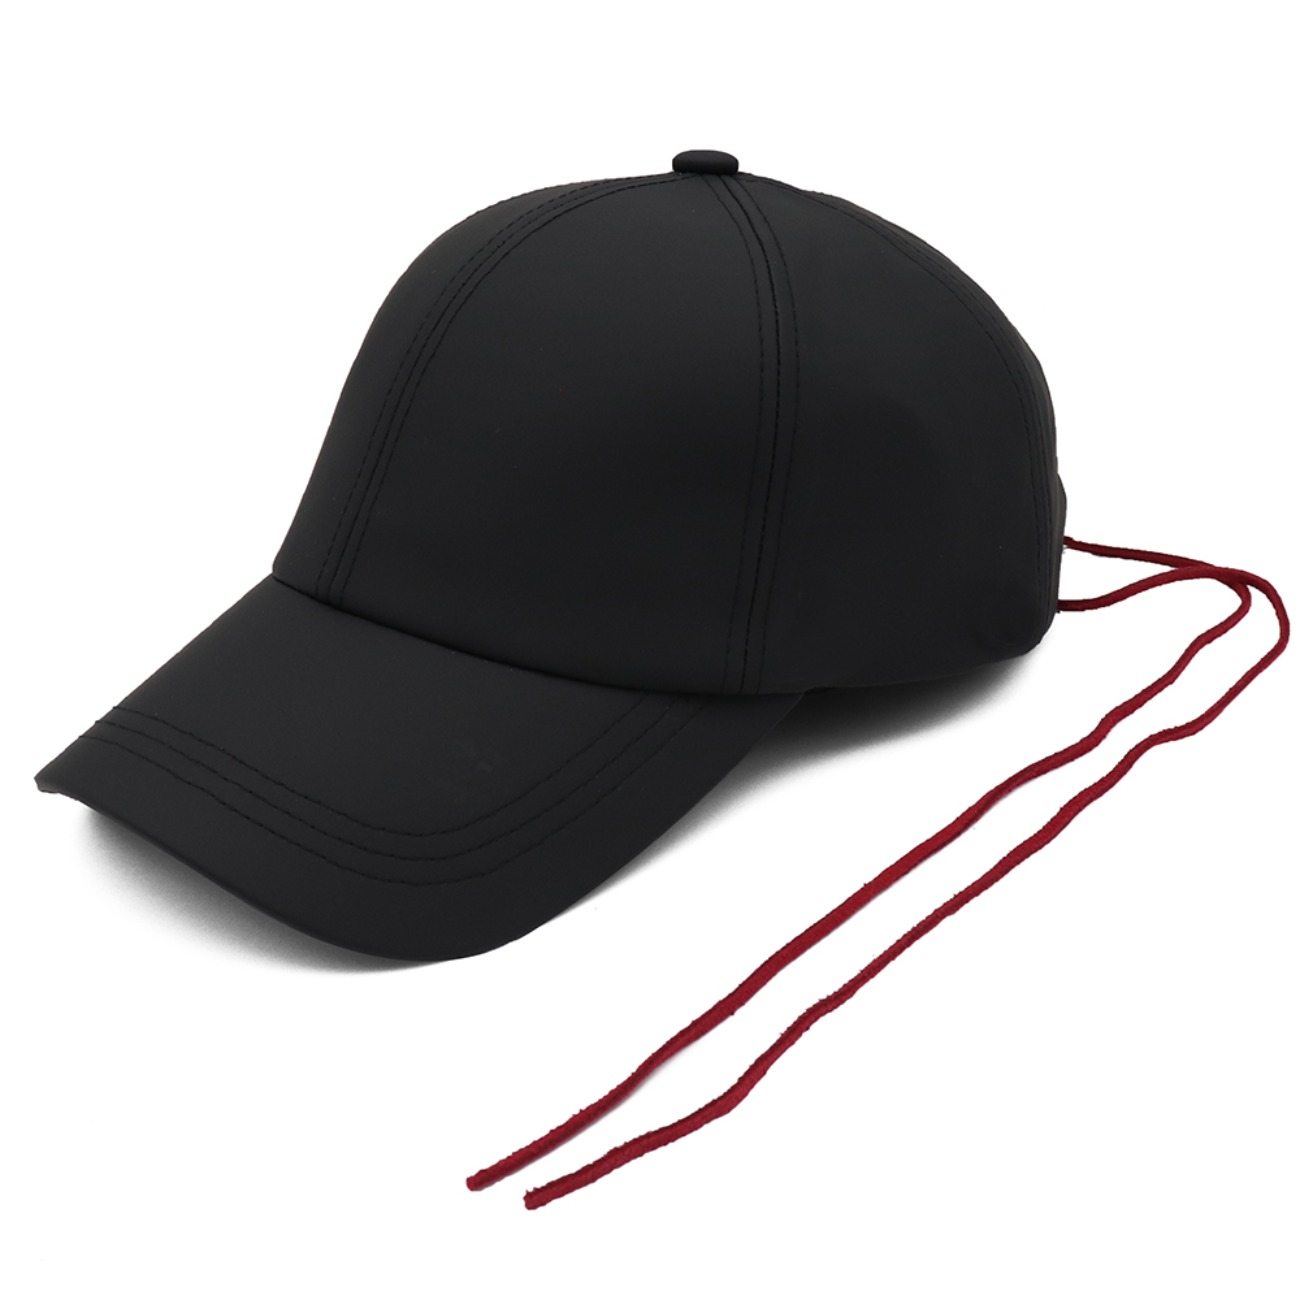 Stopper Dust Black(red string)